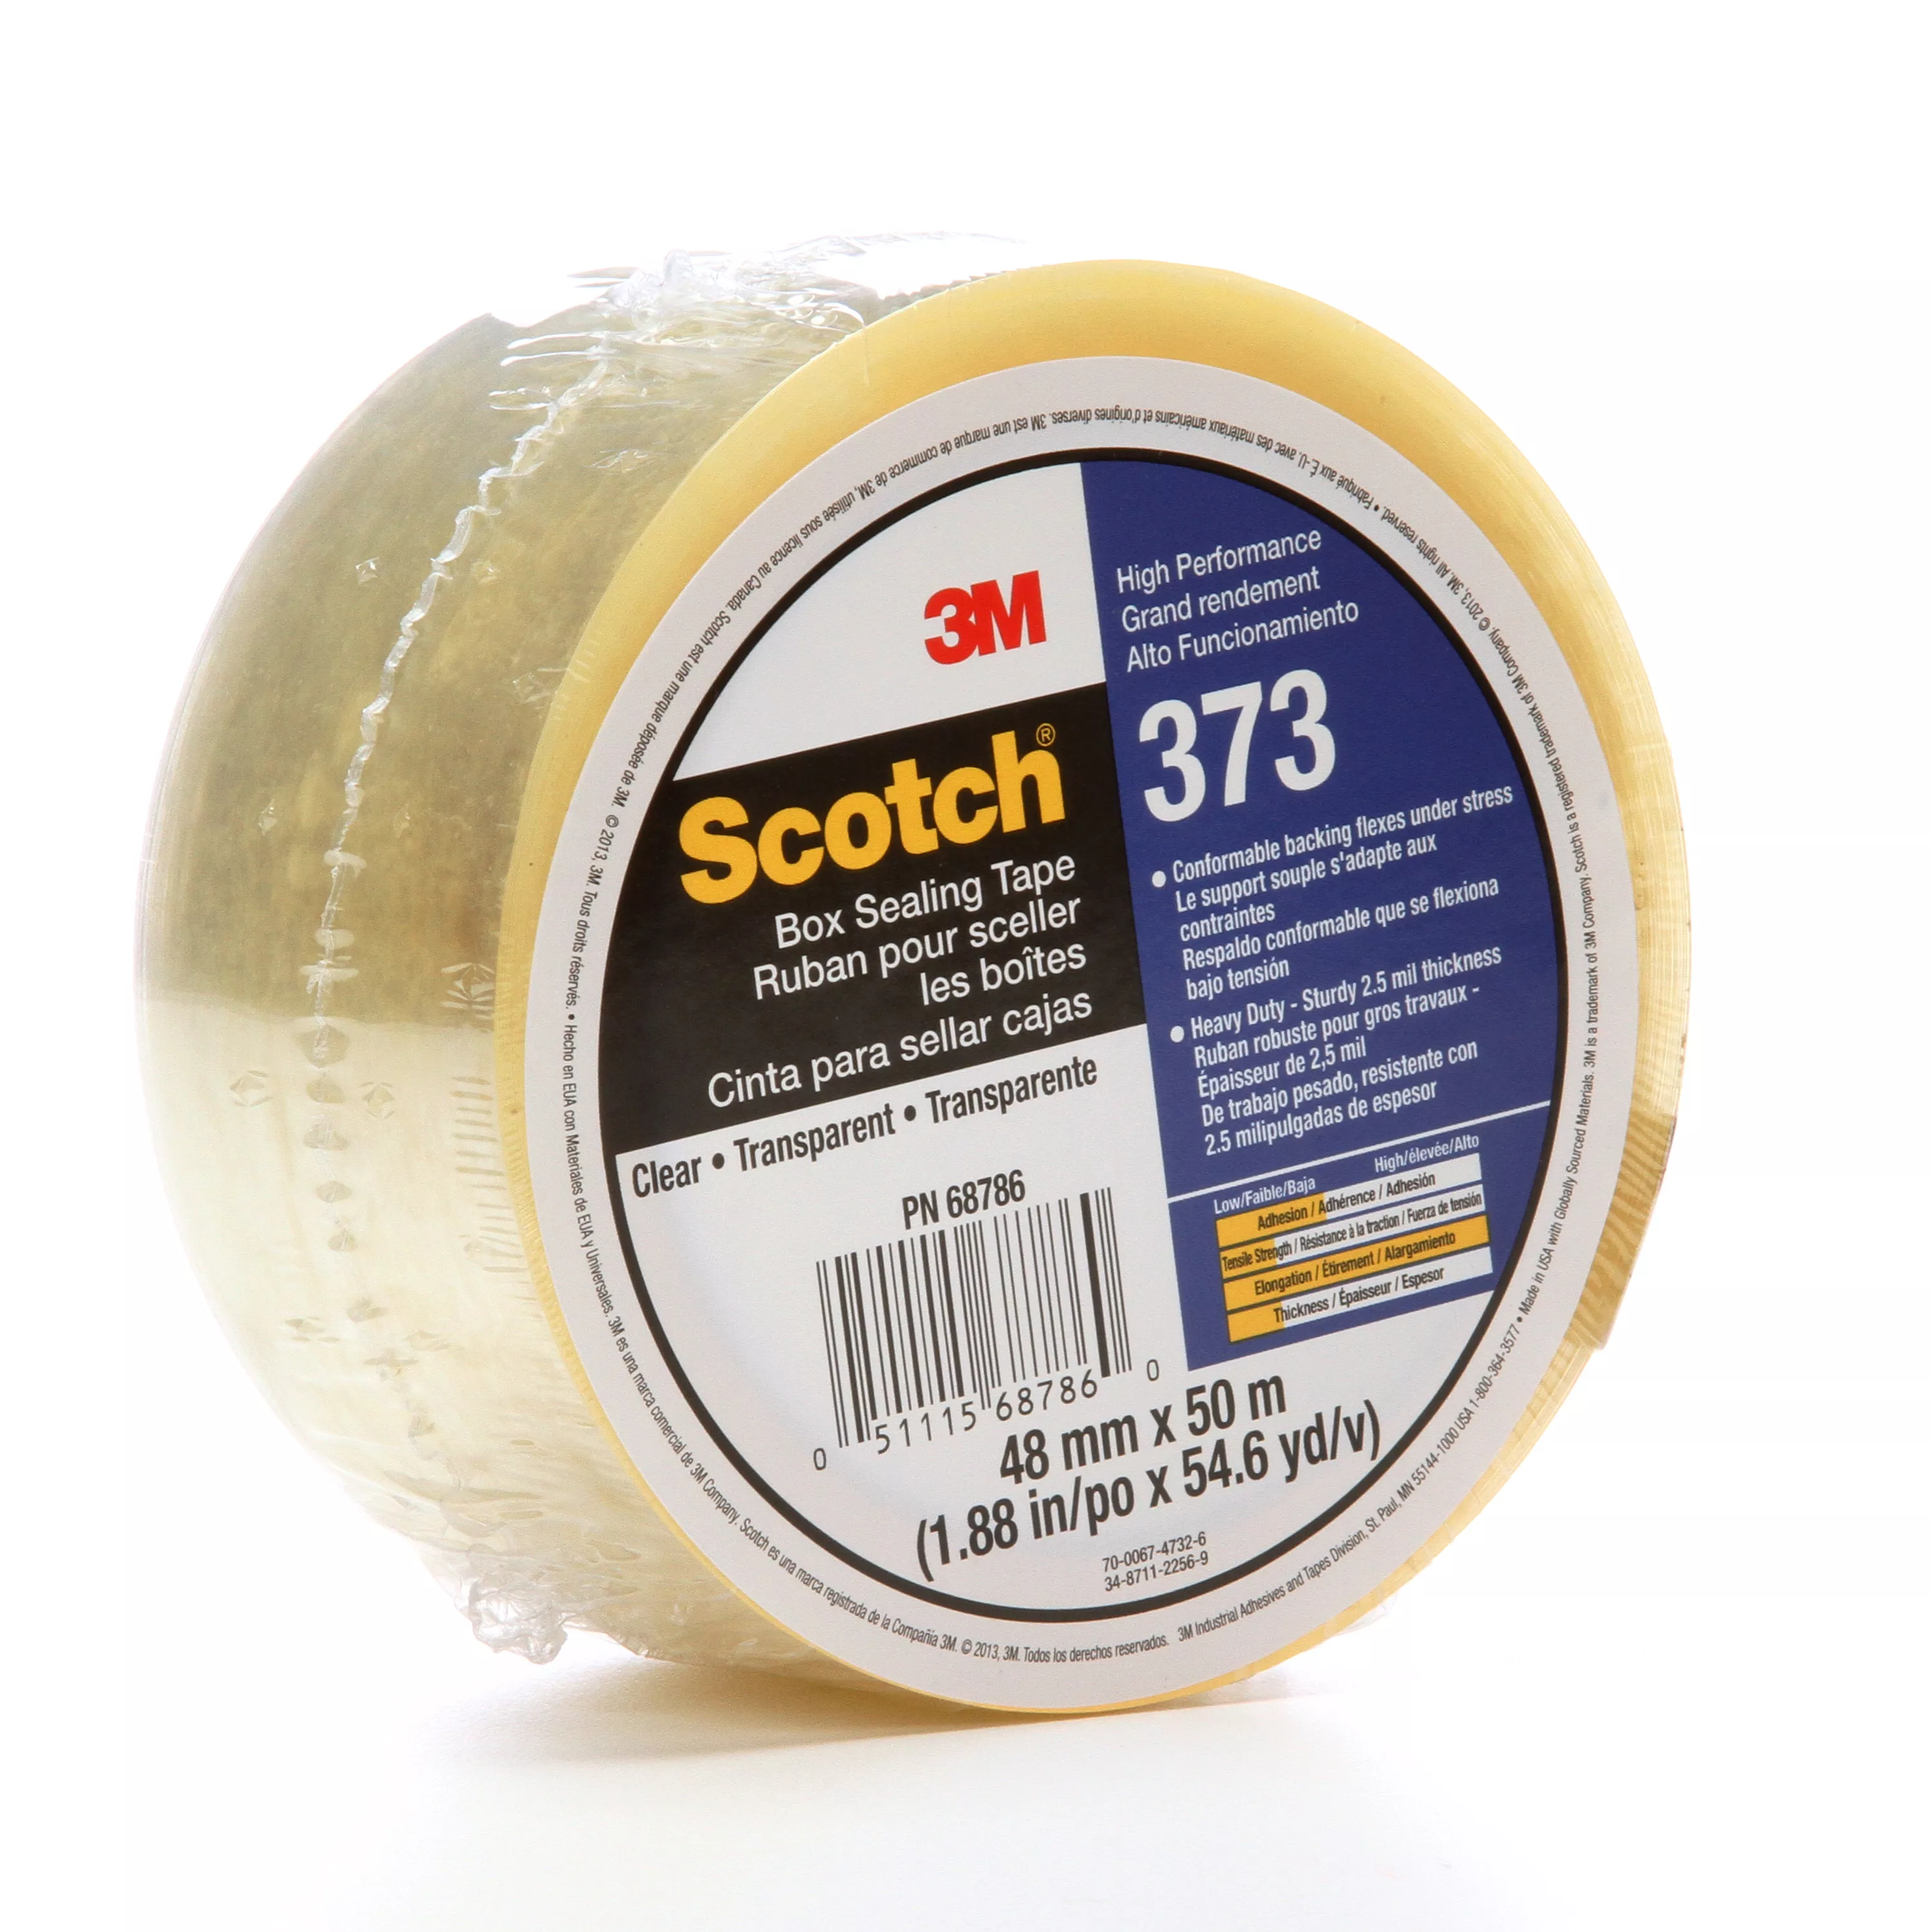 SKU 7010291514 | Scotch® Box Sealing Tape 373